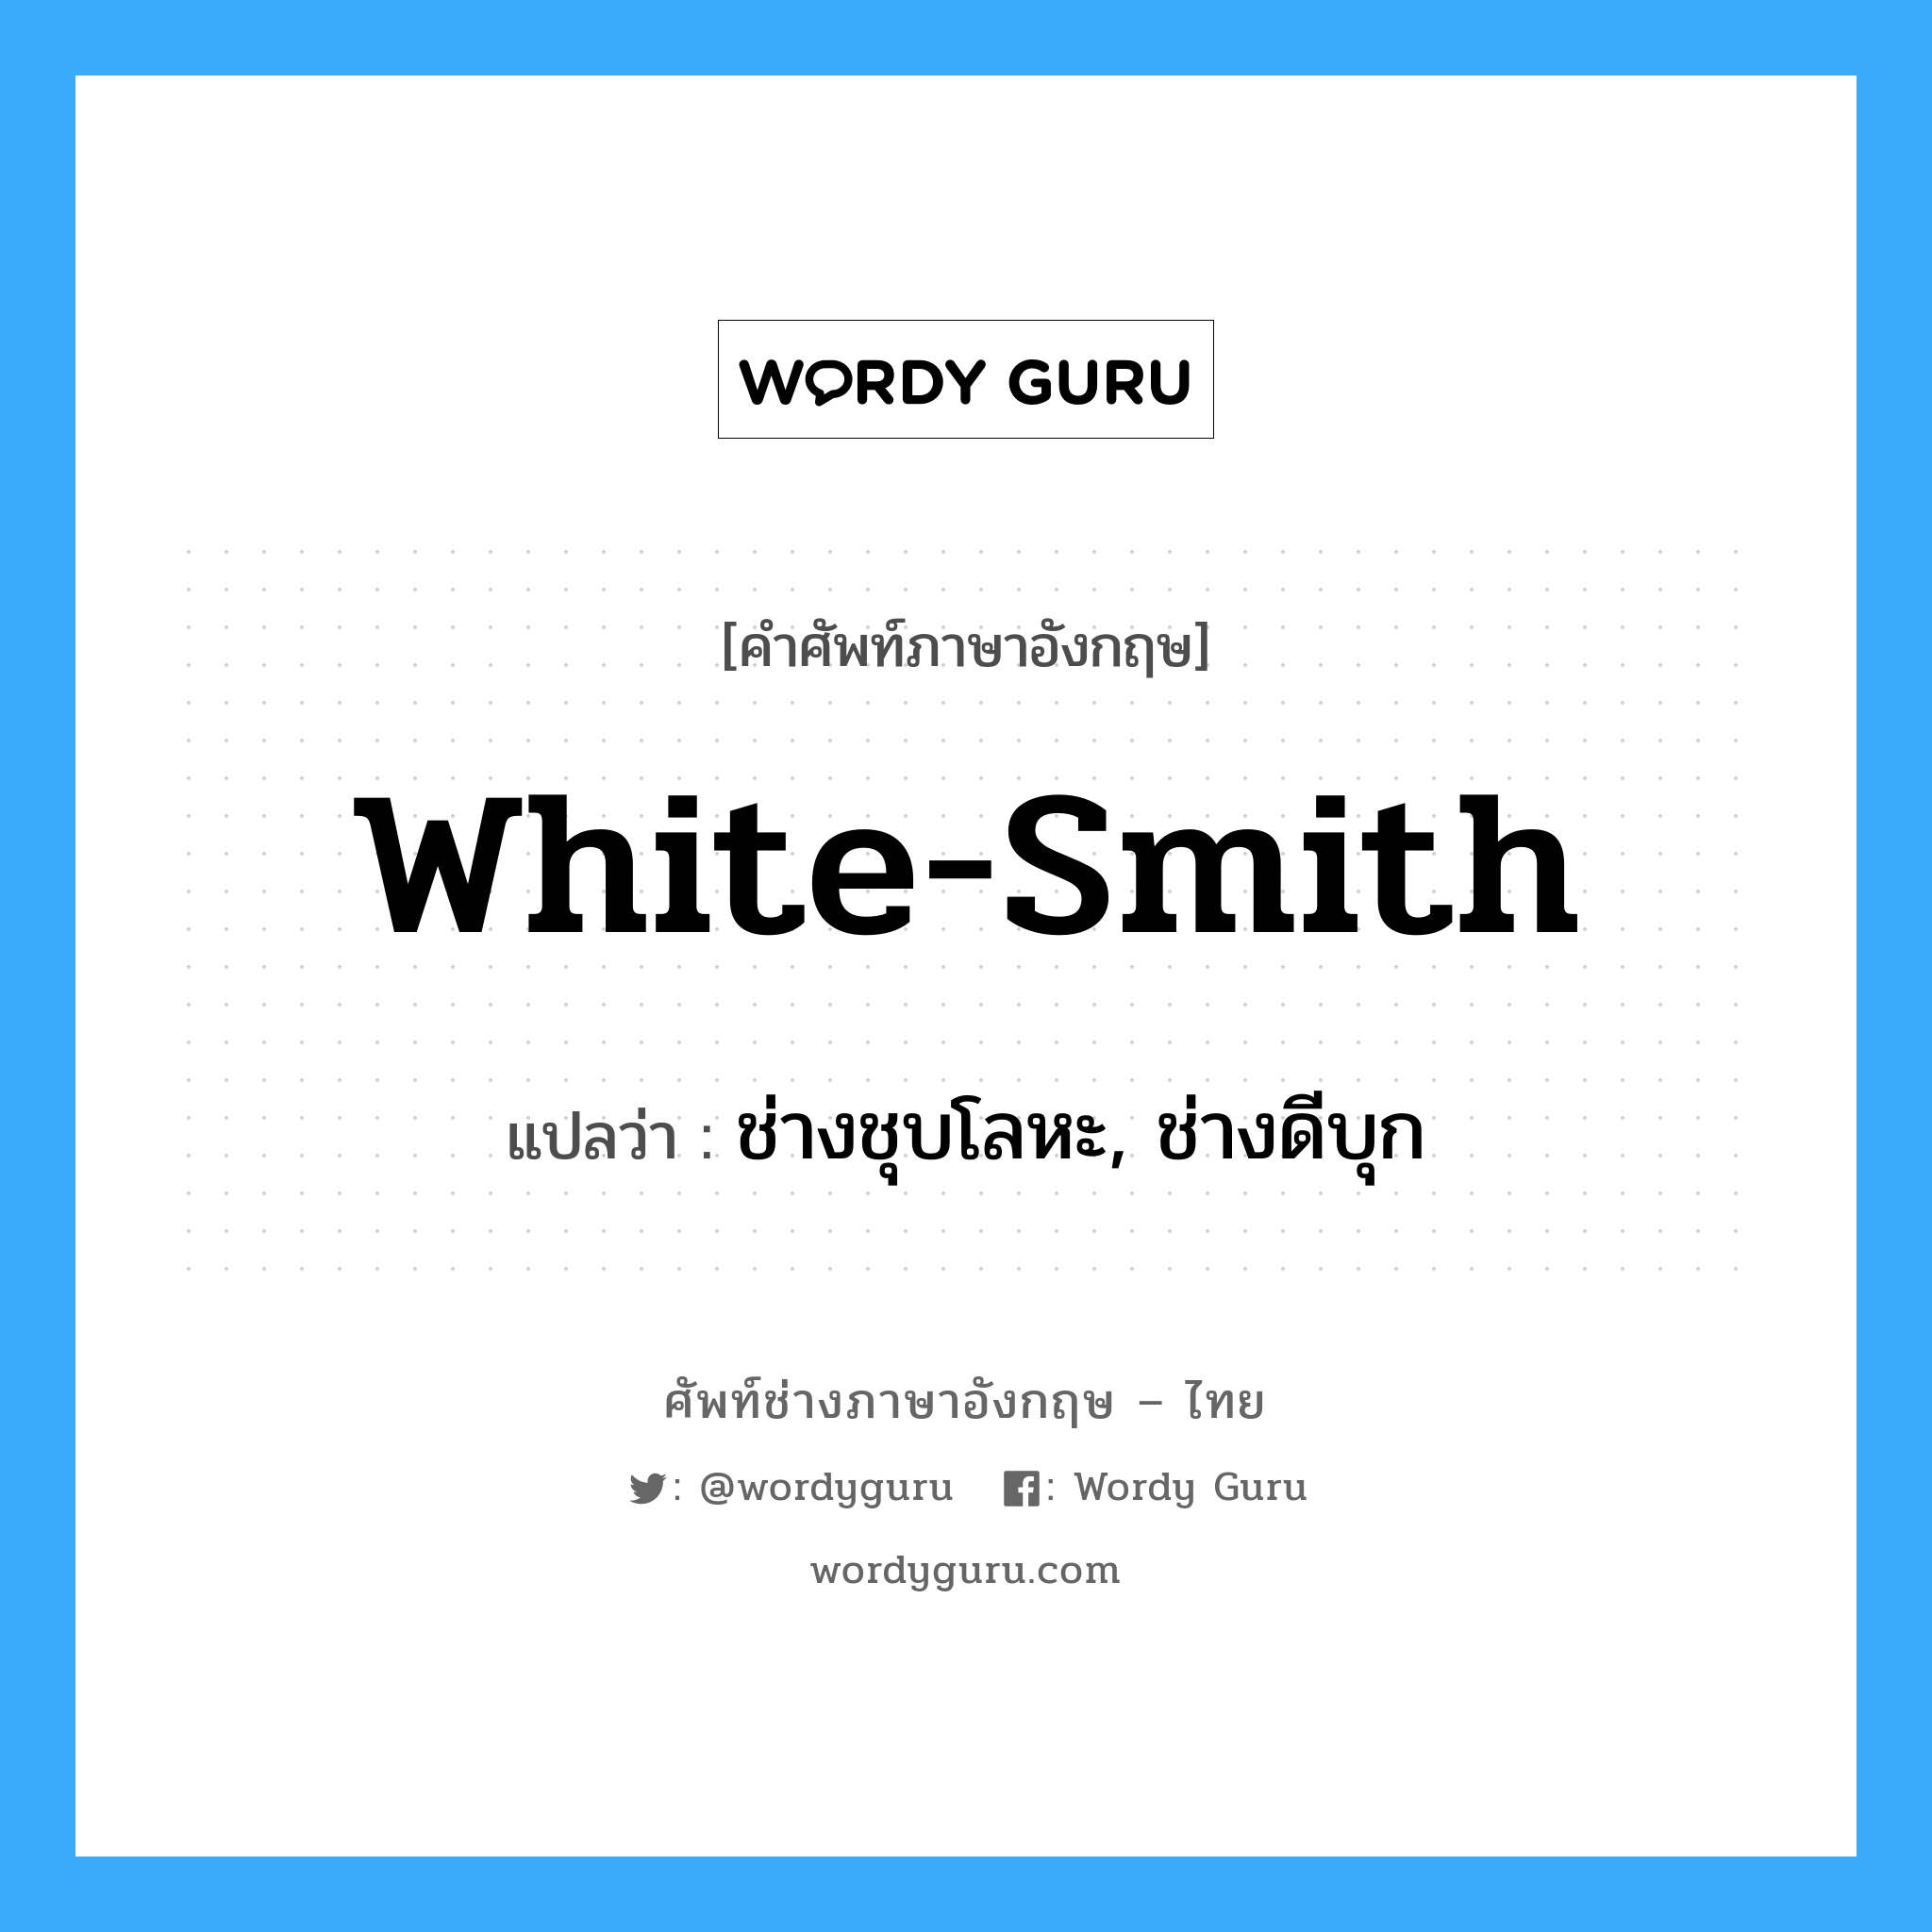 ช่างชุบโลหะ, ช่างดีบุก ภาษาอังกฤษ?, คำศัพท์ช่างภาษาอังกฤษ - ไทย ช่างชุบโลหะ, ช่างดีบุก คำศัพท์ภาษาอังกฤษ ช่างชุบโลหะ, ช่างดีบุก แปลว่า white-smith